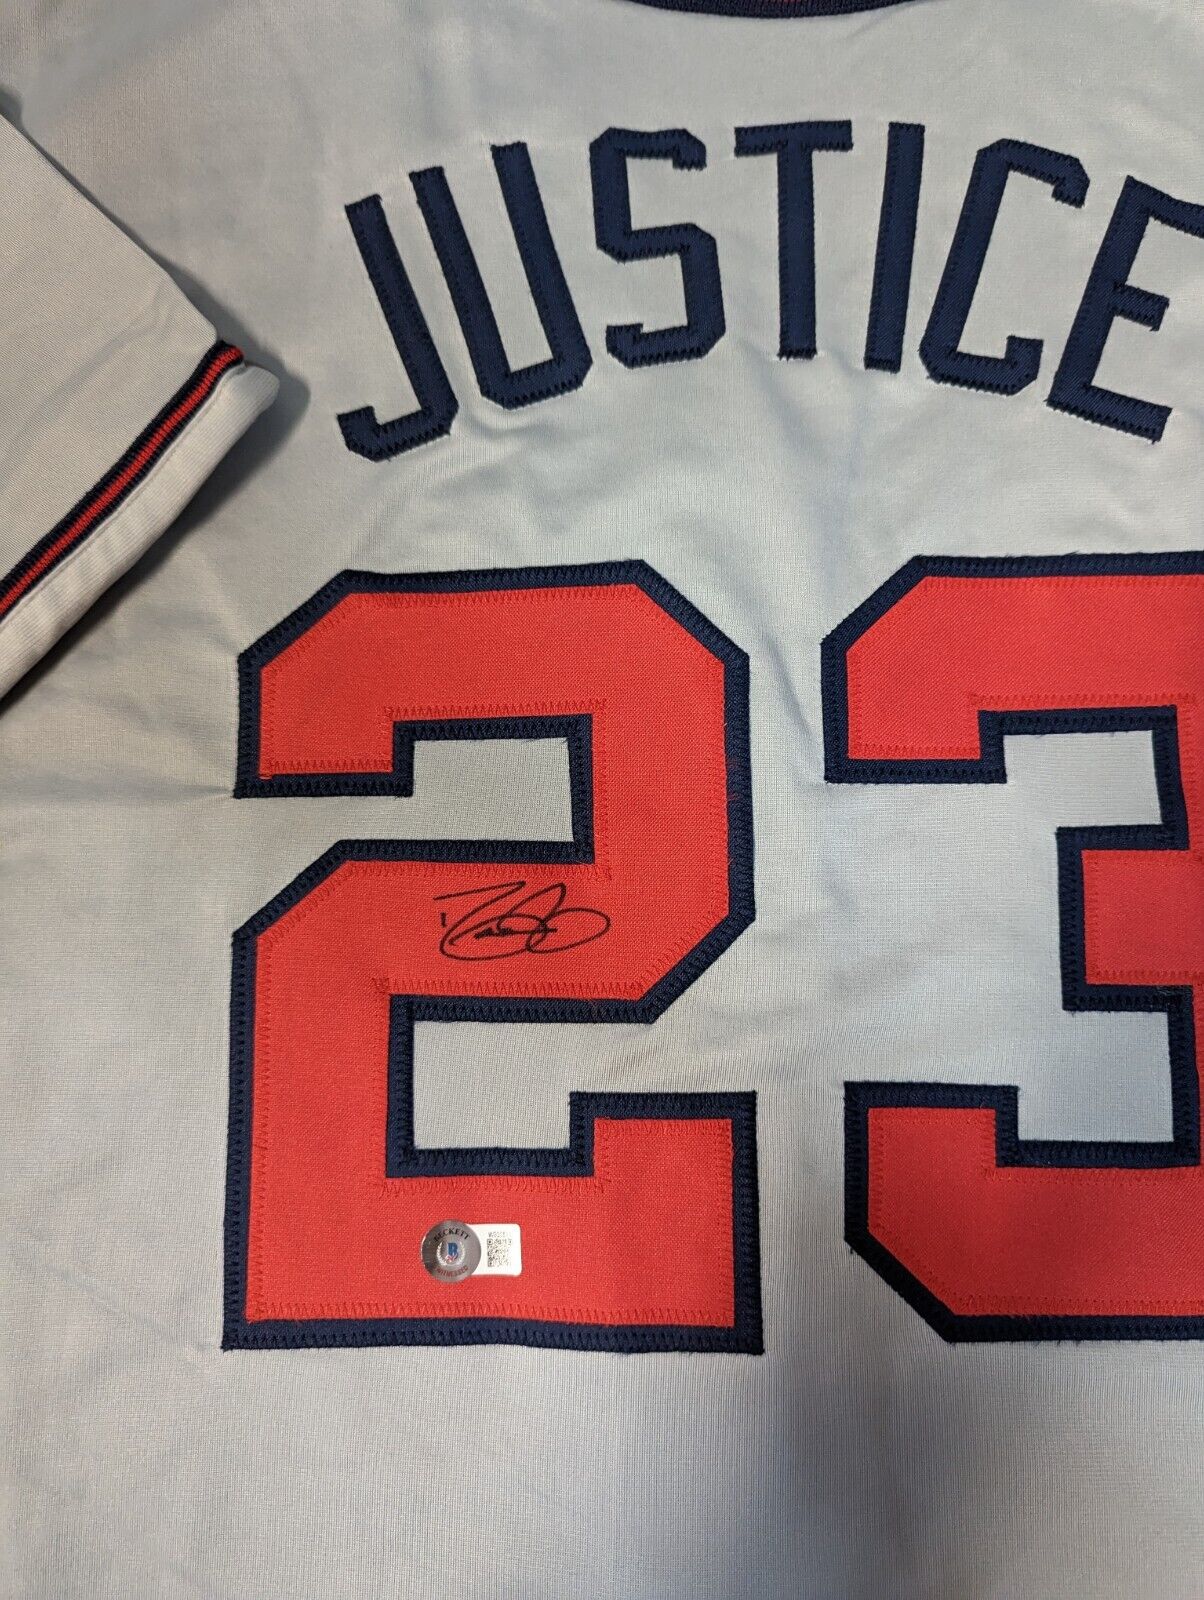 David Justice Autographed Signed Framed Atlanta Braves Jersey